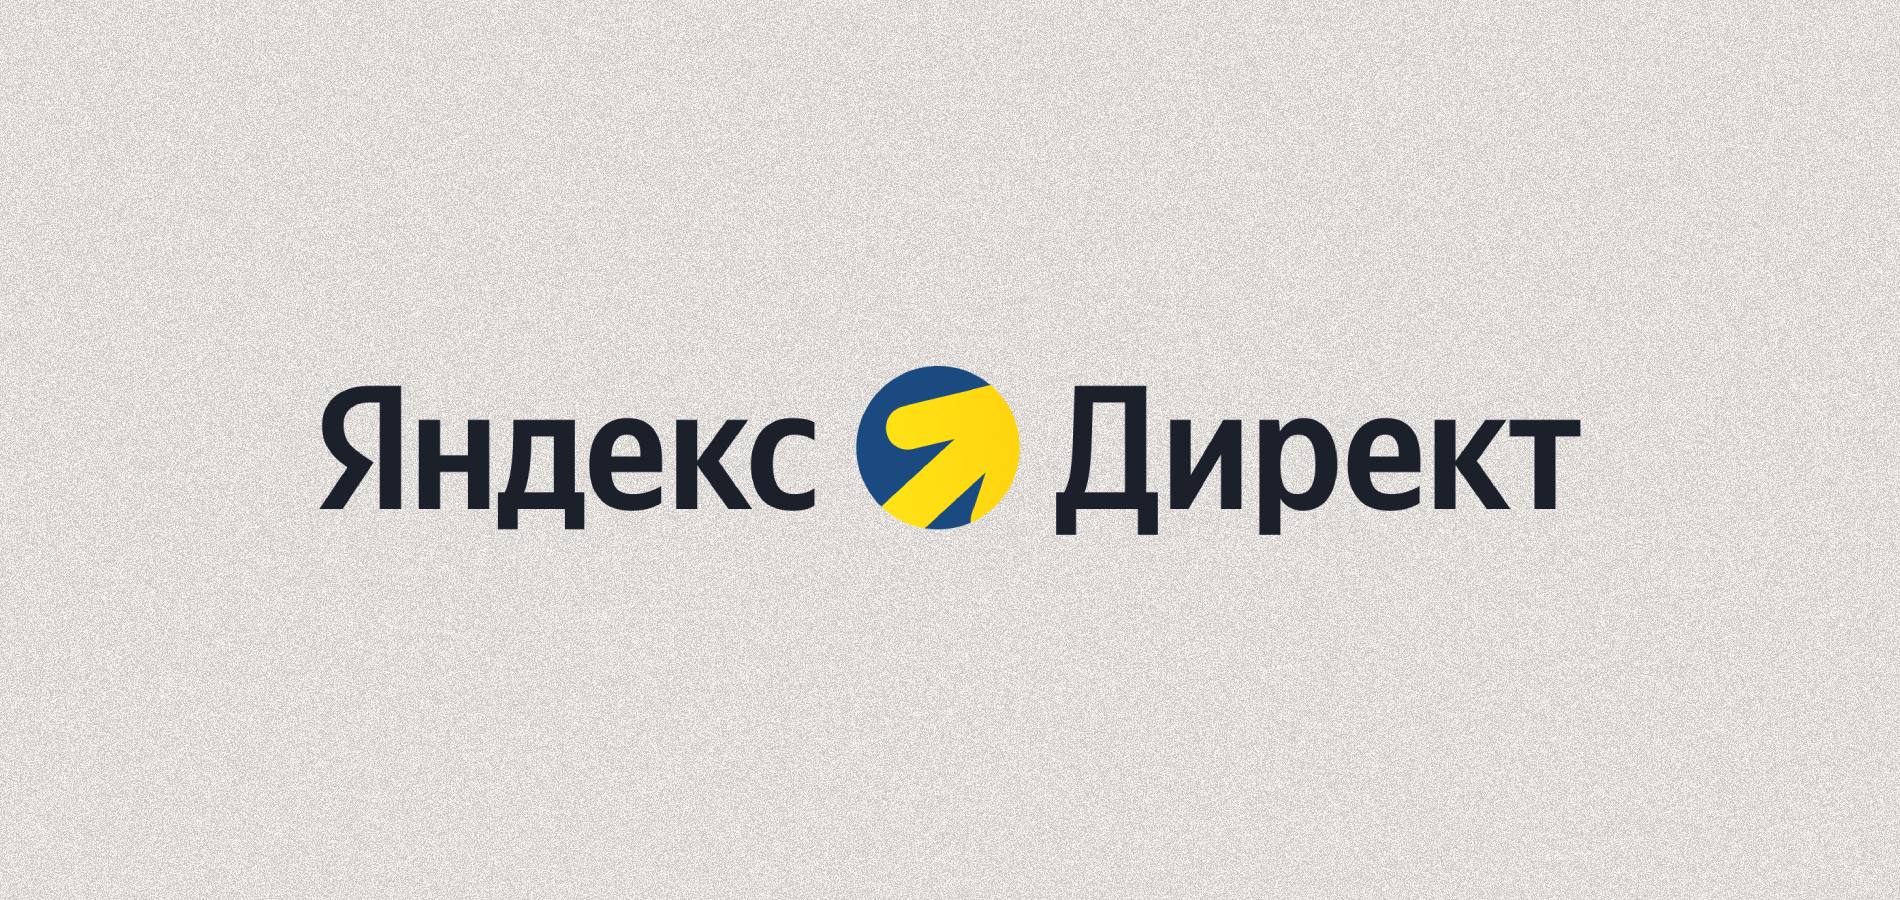 Яндекс Директ обновил интерфейс